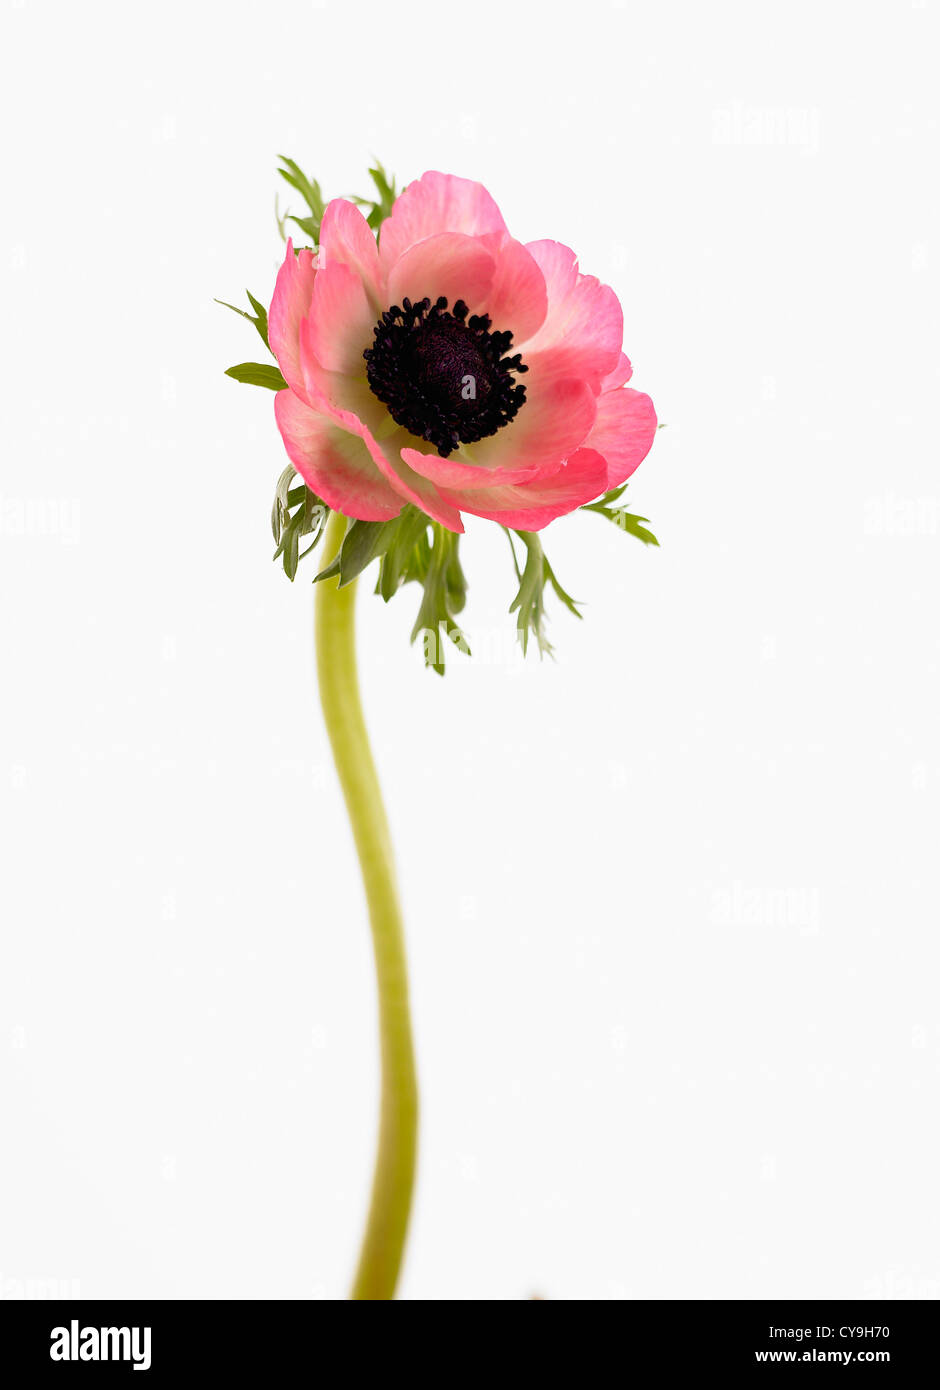 Anemone coronaria, giardino anemone, unico aprire il fiore rosa su uno stelo contro un bianco. Foto Stock